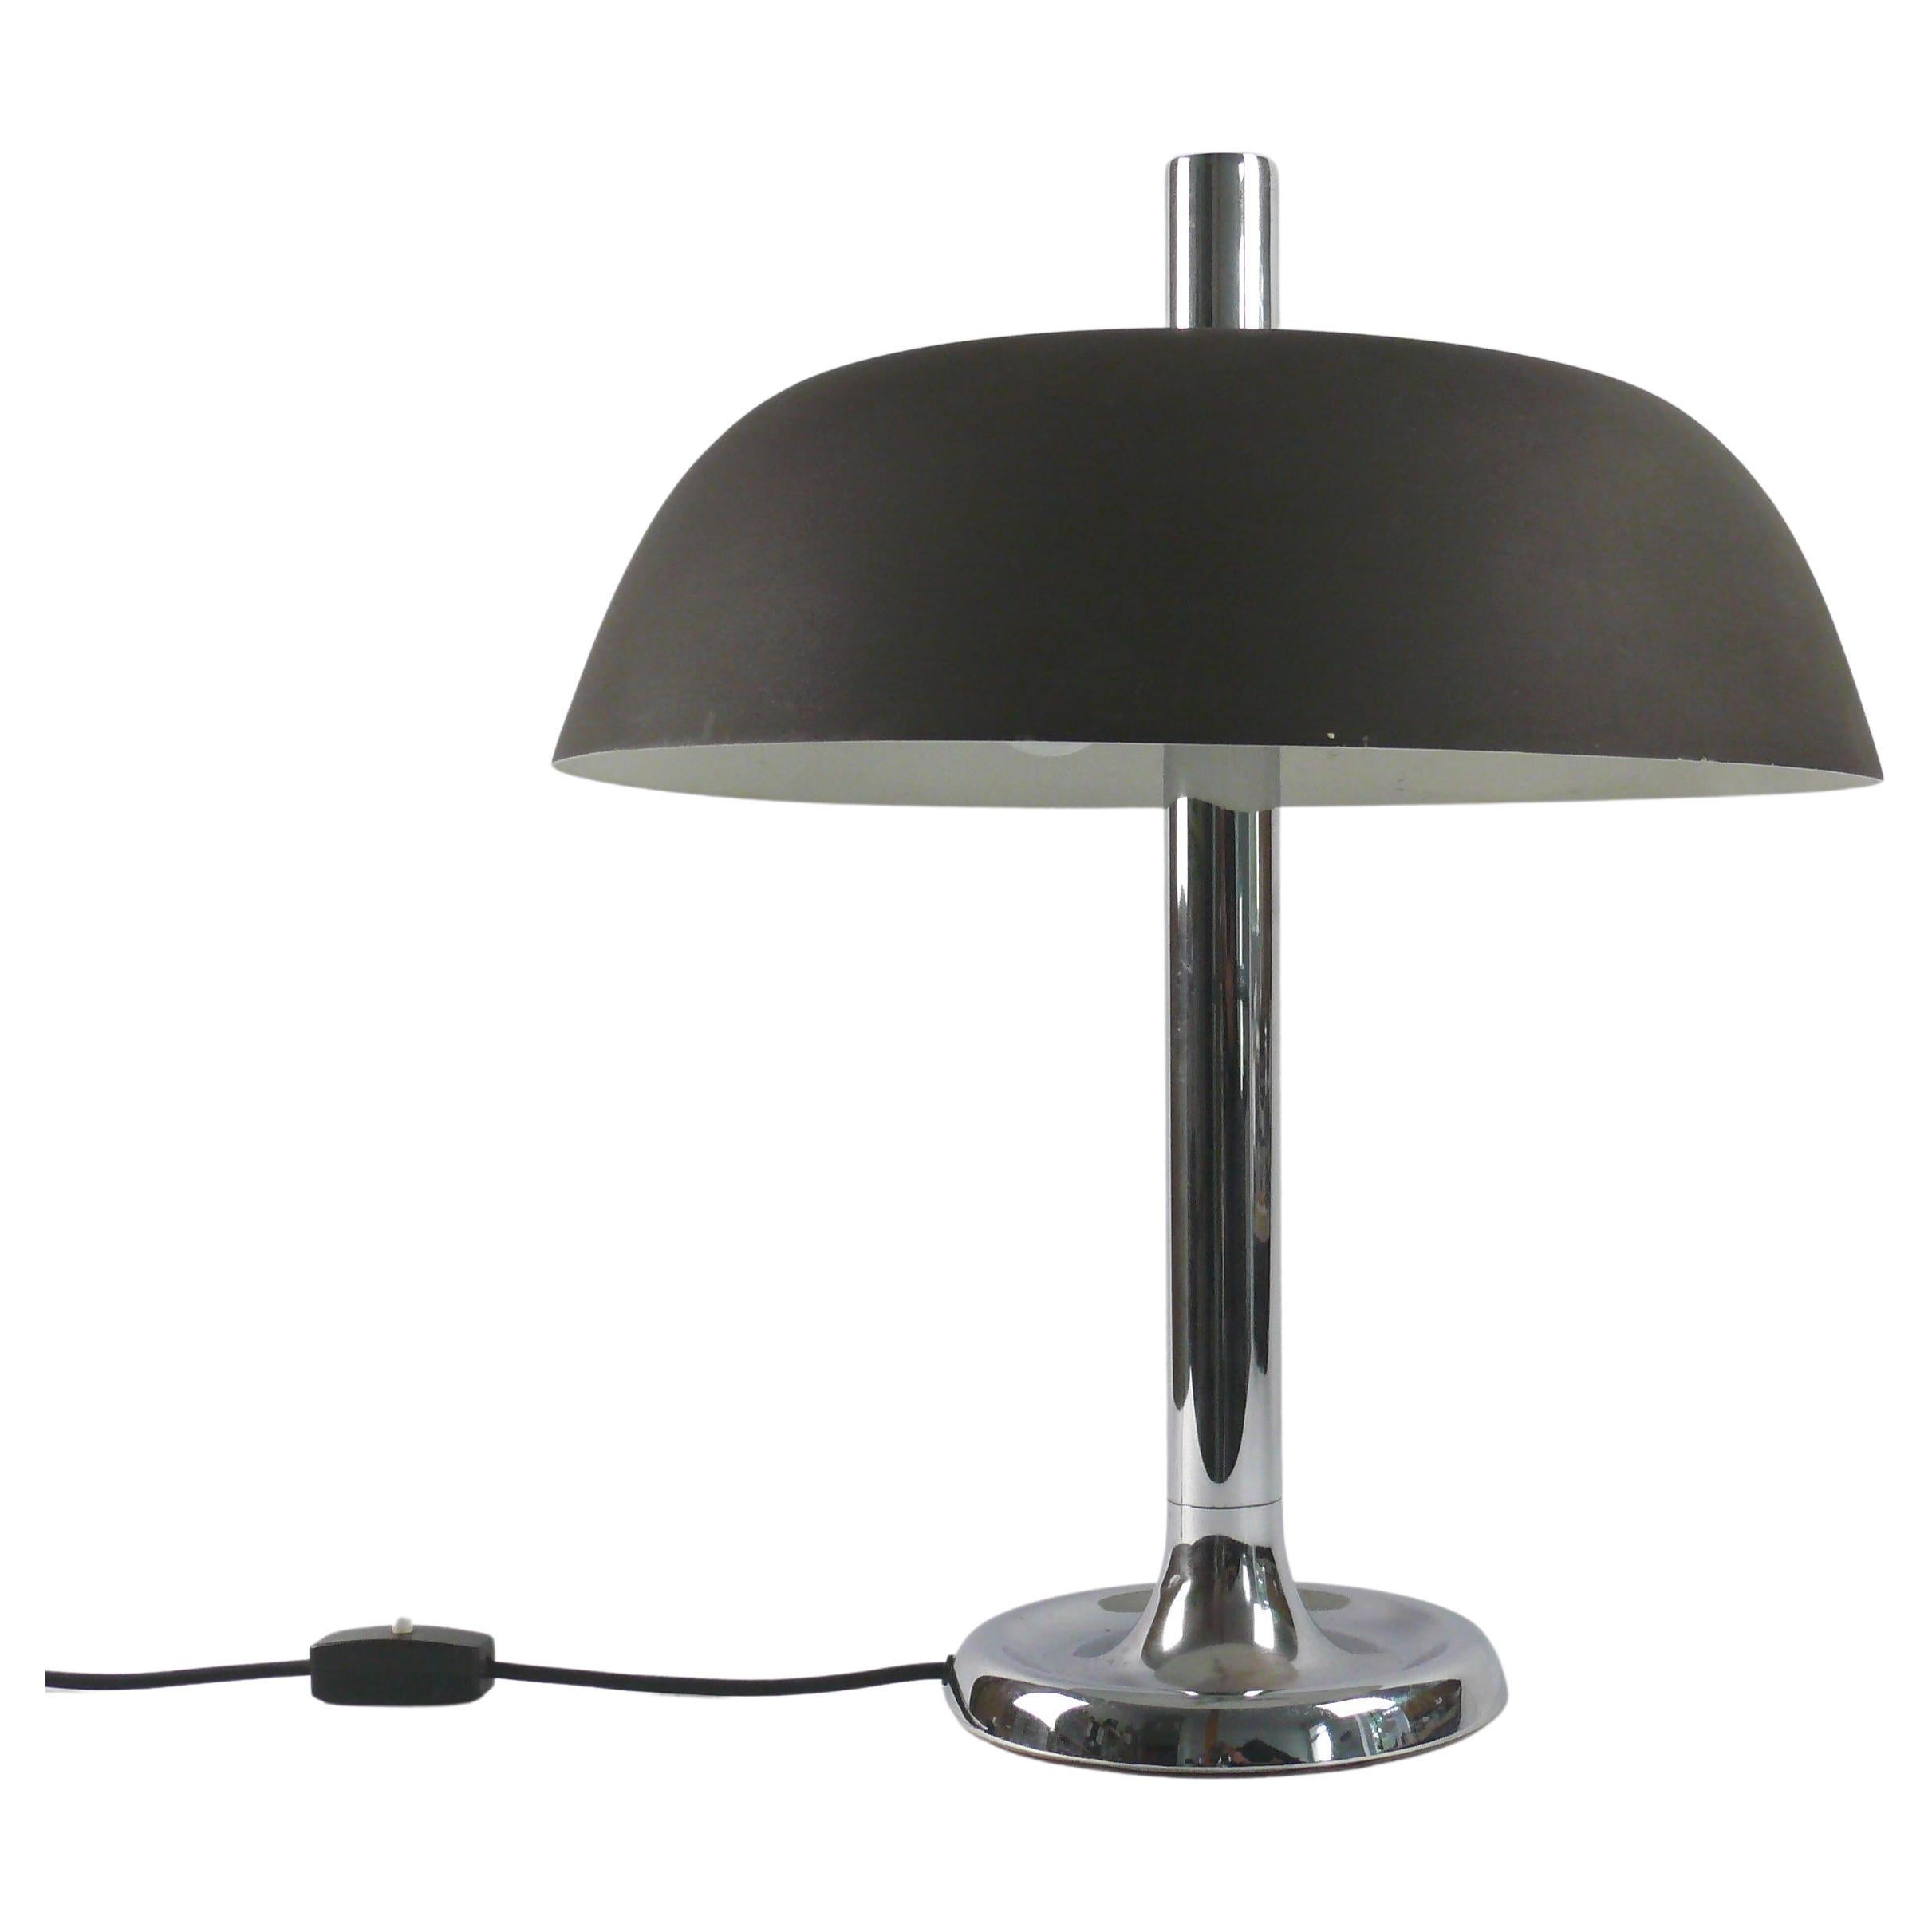 Hillebrand Table Lamp, Model 7377-321, 1960s